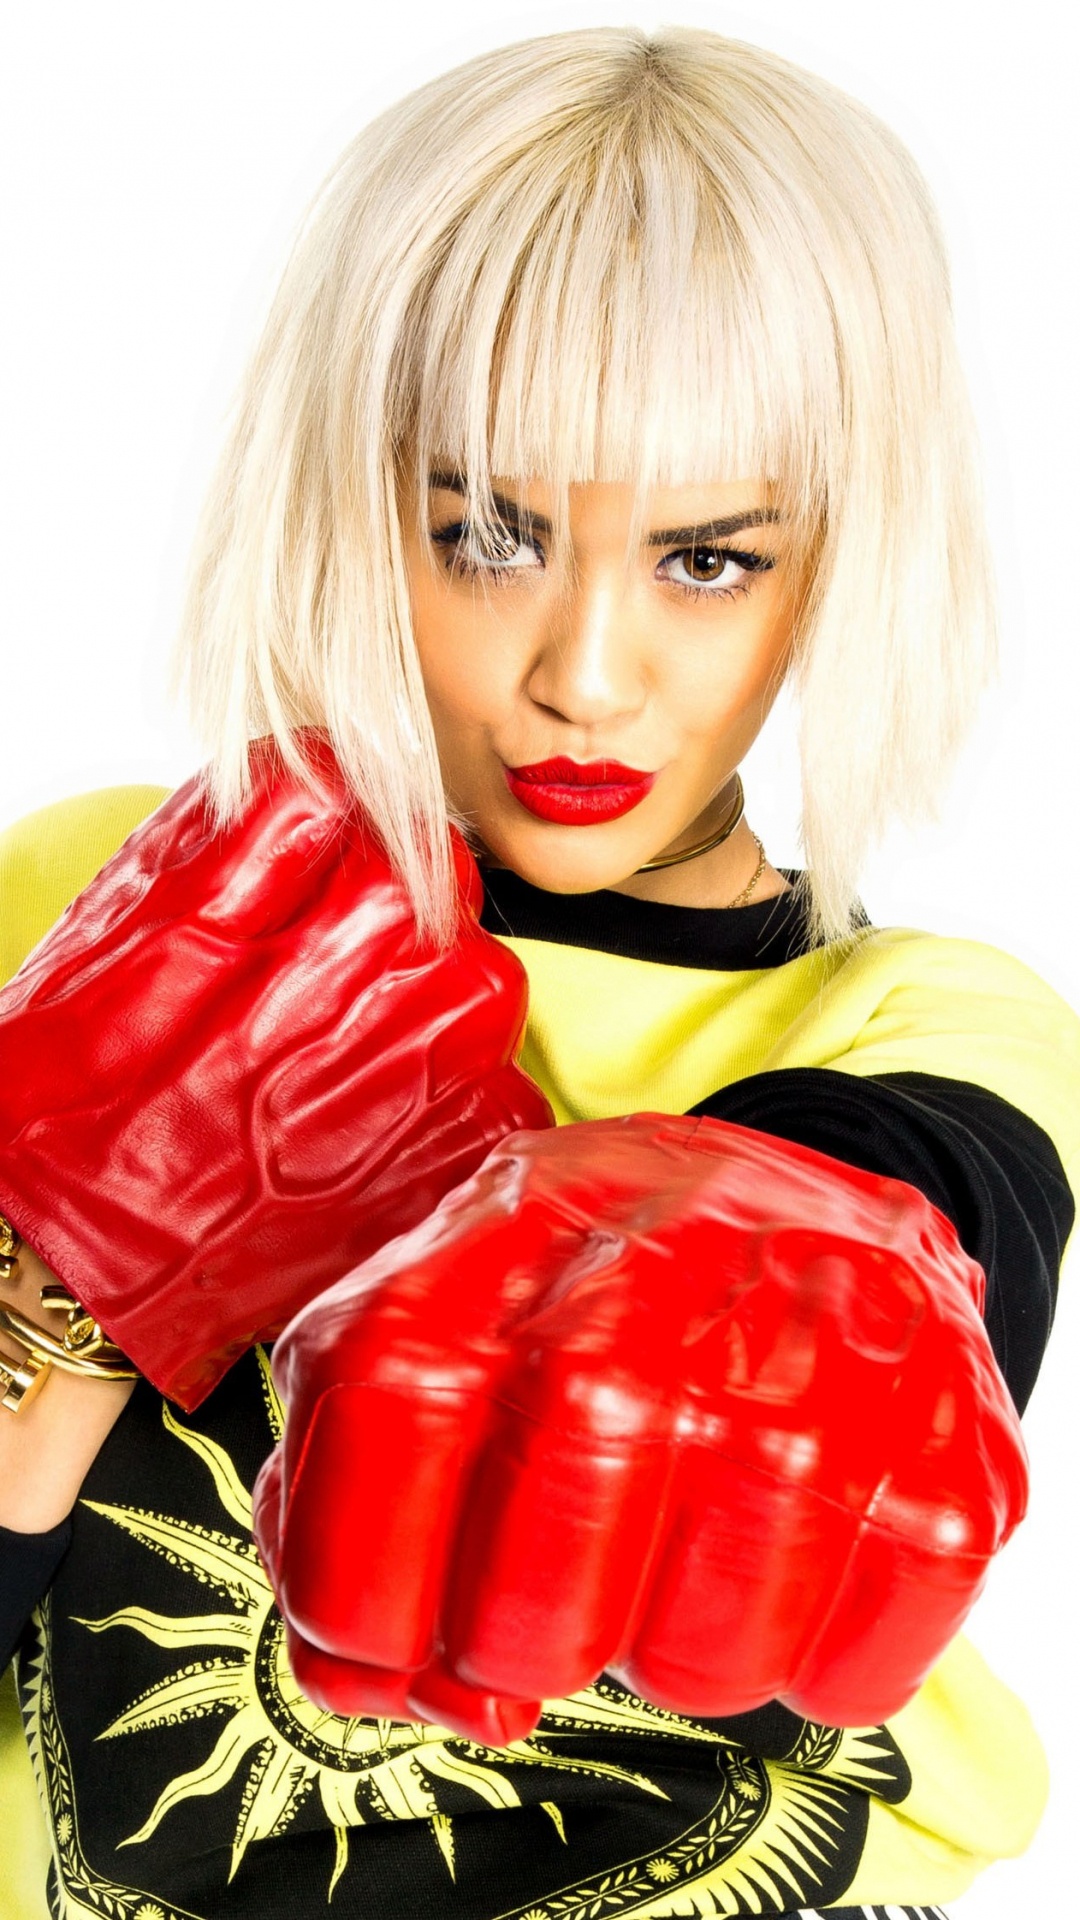 手套, Rita Ora, 拳击手套, 红色的, 拳击设备 壁纸 1080x1920 允许